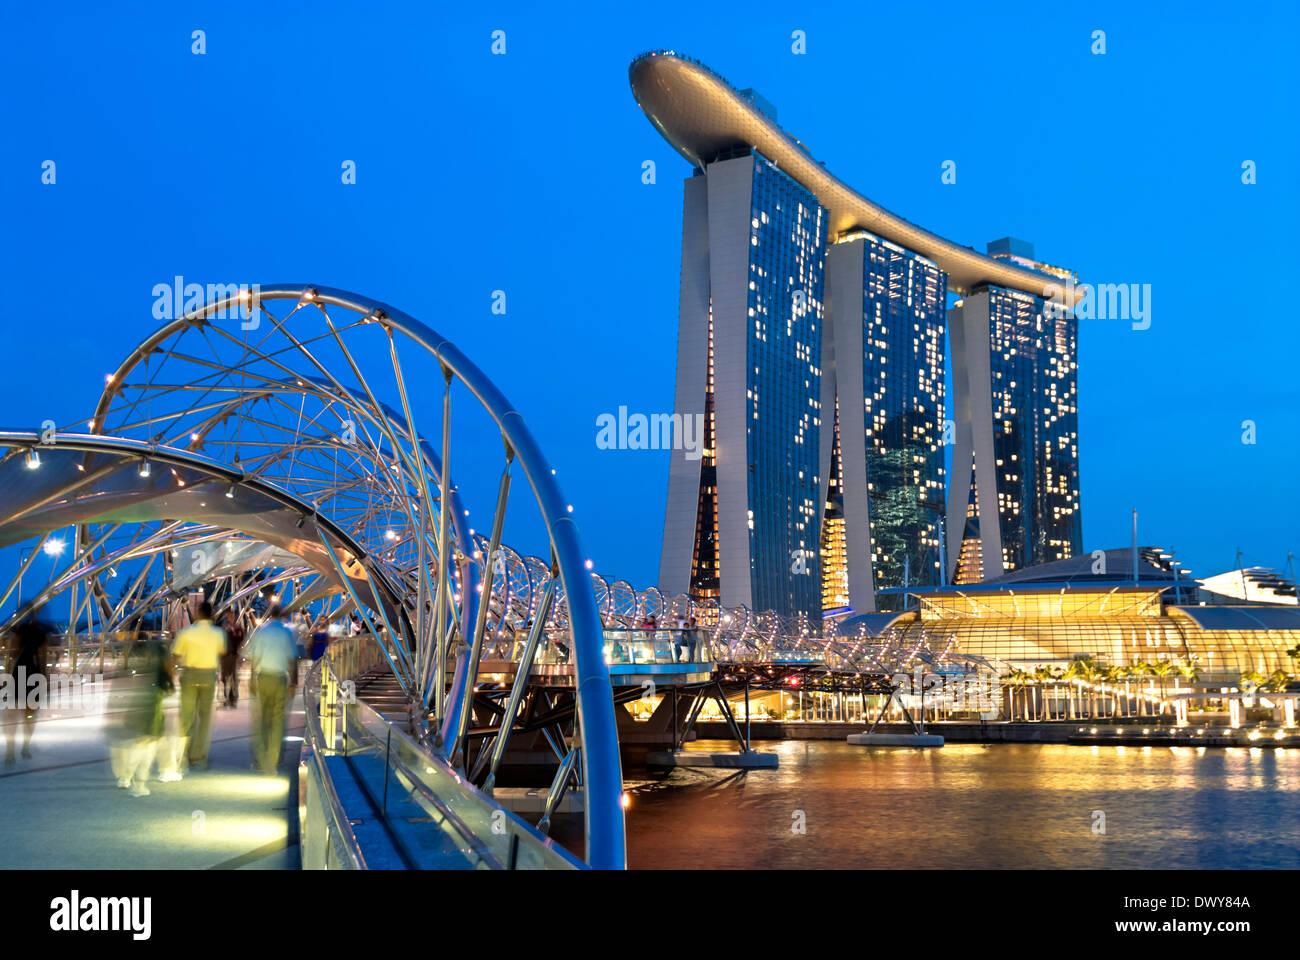 Image de nuit la nouvelle Marina Bay Sands Hotel and Casino à Singapour. Banque D'Images